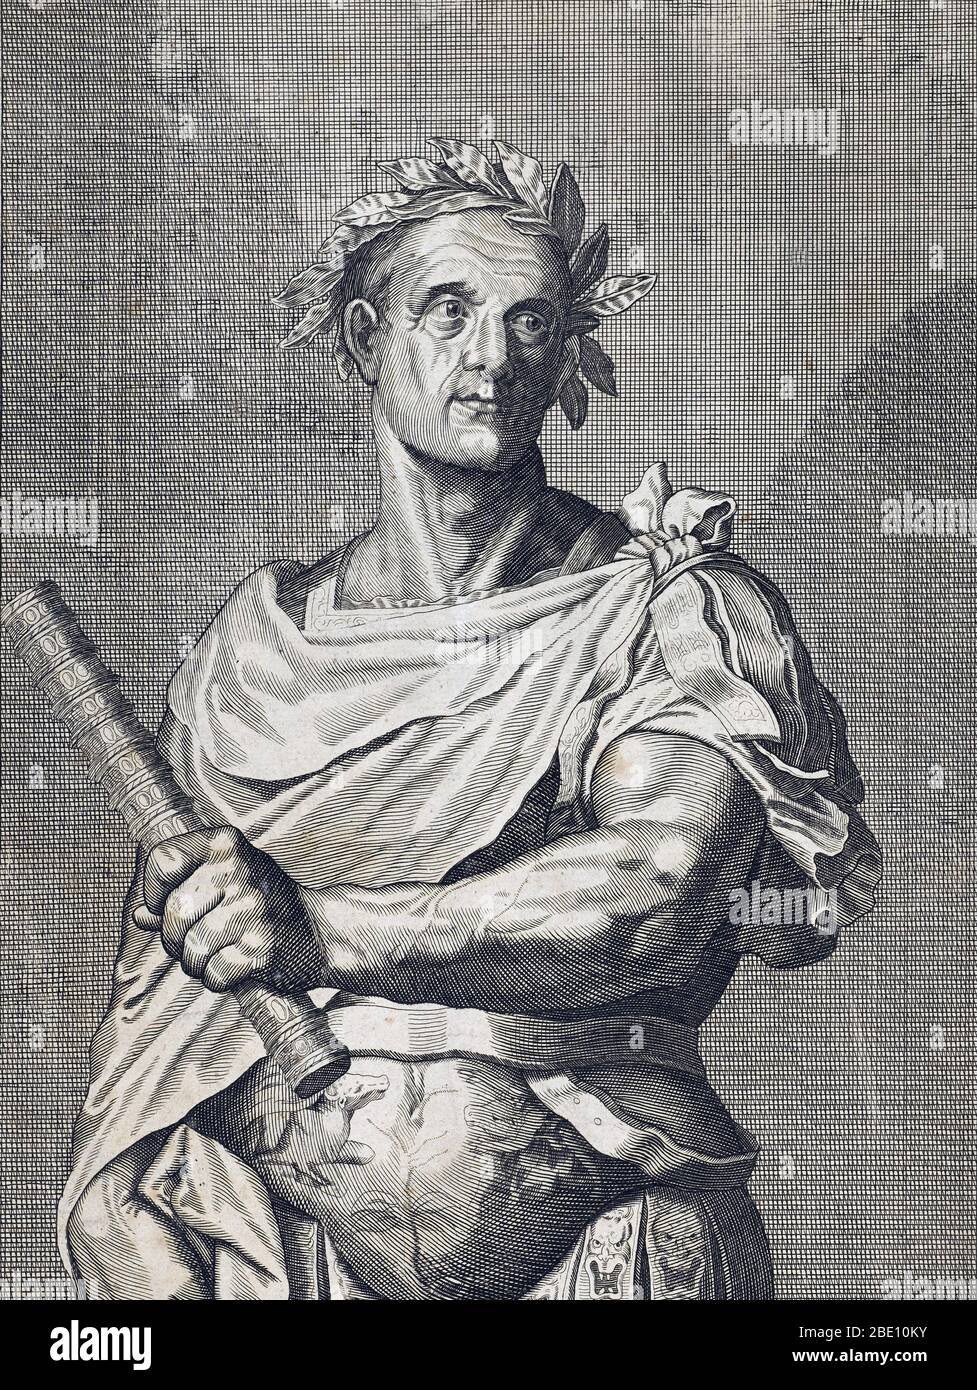 Gaius Julius Caesar (100-44 v. Chr.) war ein römischer General und Staatsmann. Er spielte eine entscheidende Rolle bei der allmählichen Umwandlung der römischen Republik in das römische Reich. In militärischen Kampagnen zur Sicherung der römischen Herrschaft über die Provinz Gallien (heute Frankreich) gewann er viel Prestige. Der römische Senat, aus Angst vor seiner Macht, befahl ihm, seine Armee zu lösen, aber Caesar weigerte sich, überquerte den Rubicon Fluss, kehrte nach Rom mit seiner Armee, und machte sich Diktator. Auf einer anschließenden Kampagne in Asien berichtete er dem Senat: "Ich kam, ich sah, ich eroberte." Caesar wurde von seinem Freund Brutus und o ermordet Stockfoto